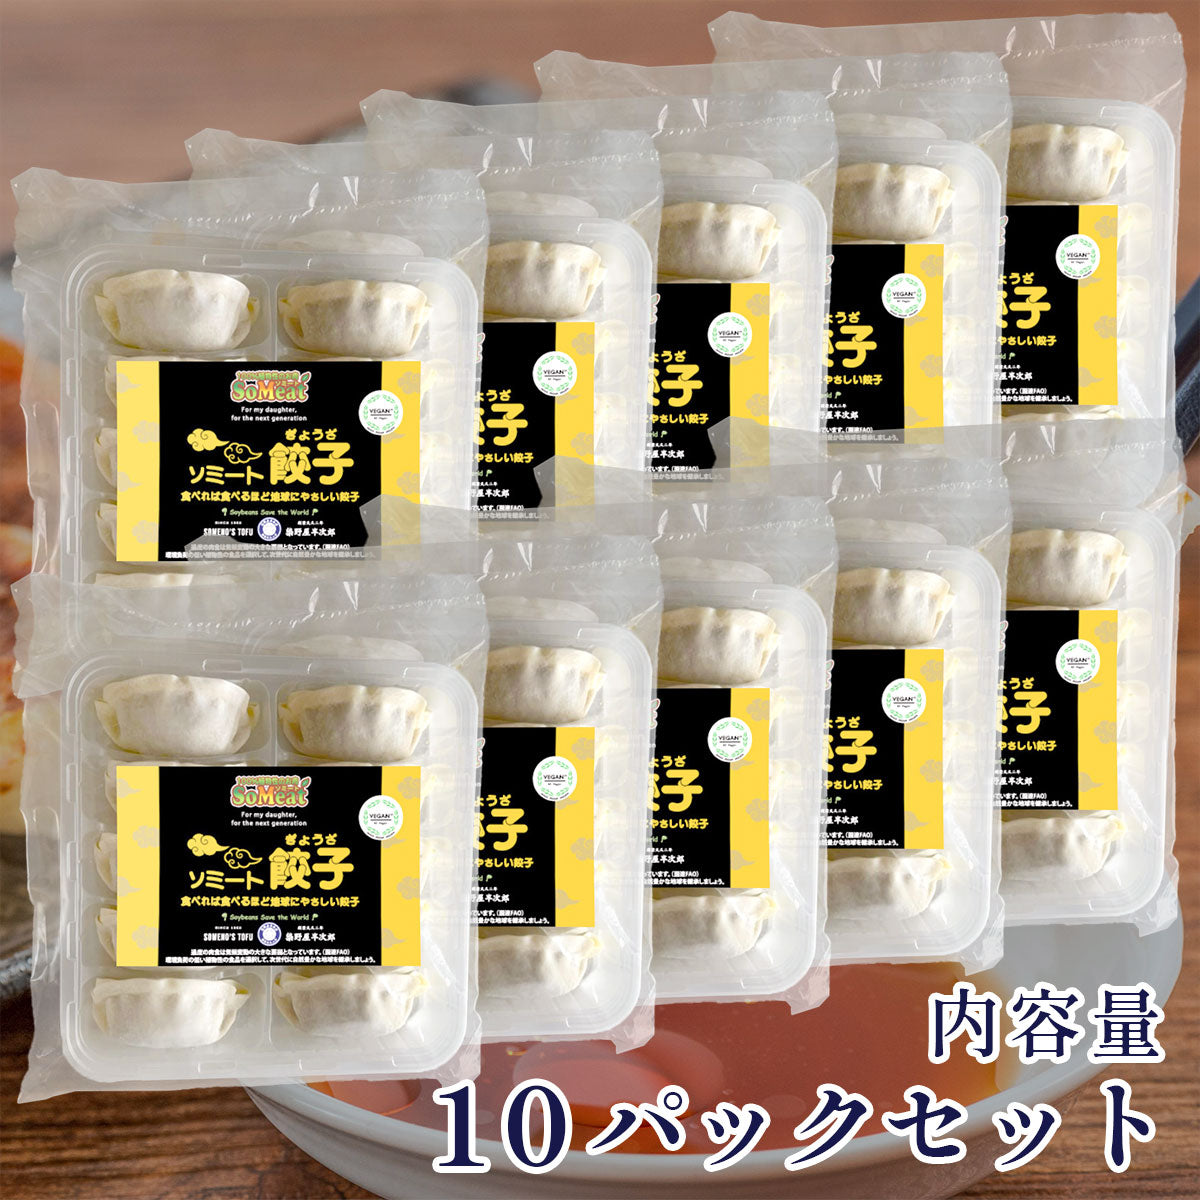 
                  
                    ソミート 餃子 10個×10パック
                  
                